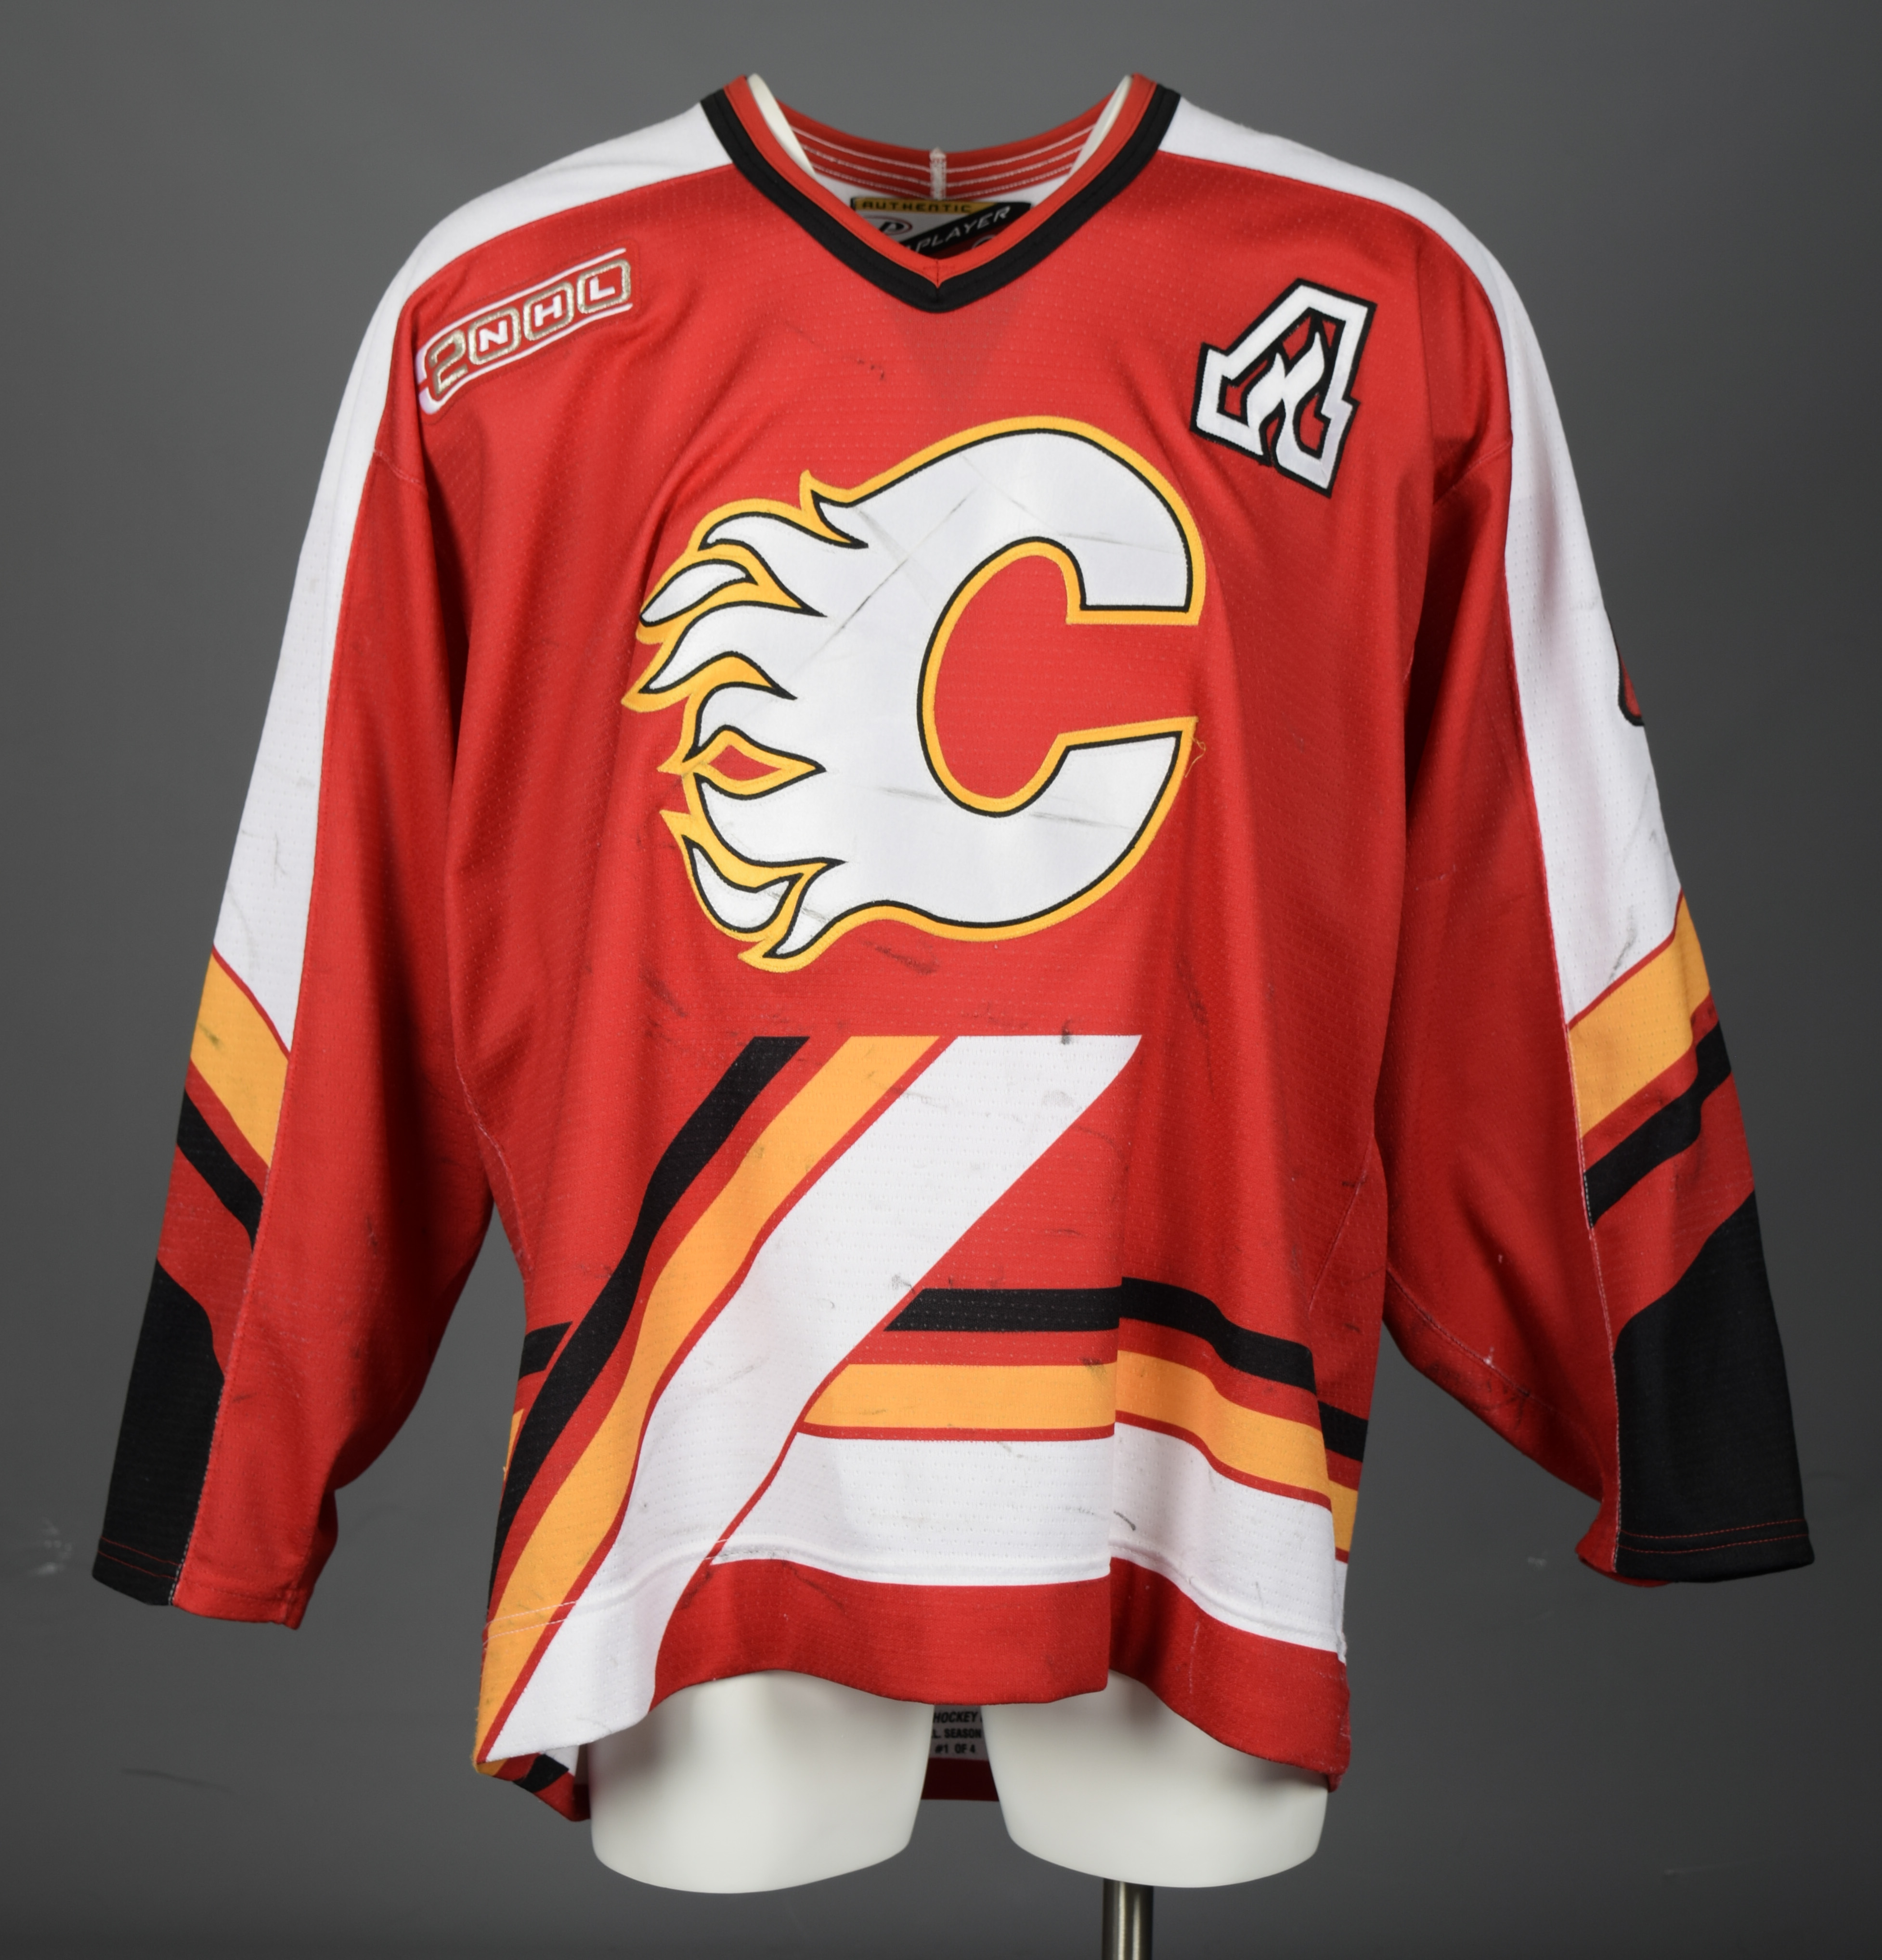 Calgary Flames on X: #ThrowbackThursday, Valeri Bure style! #tbt